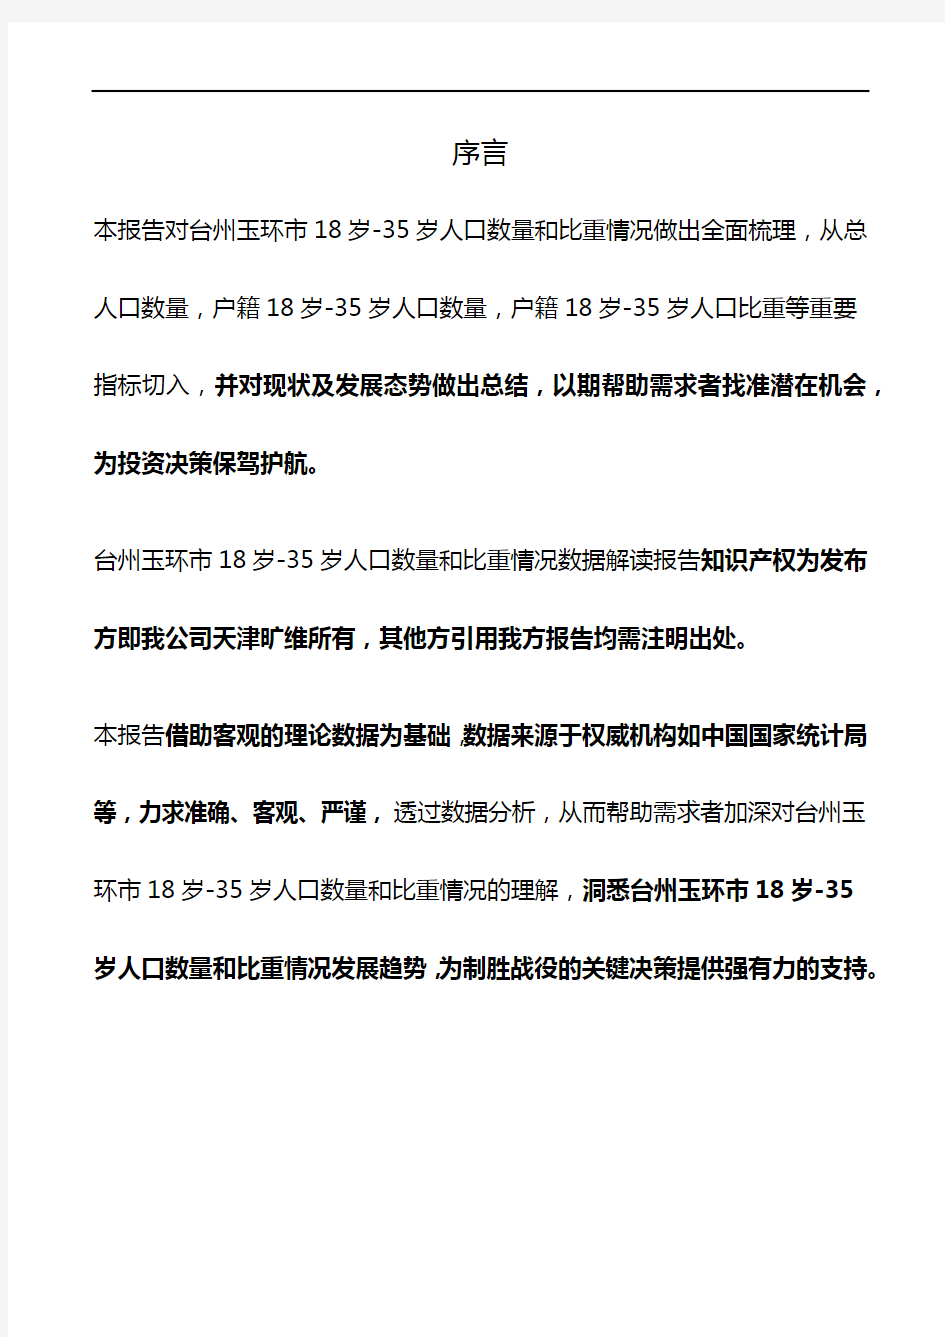 浙江省台州玉环市18岁-35岁人口数量和比重情况3年数据解读报告2020版